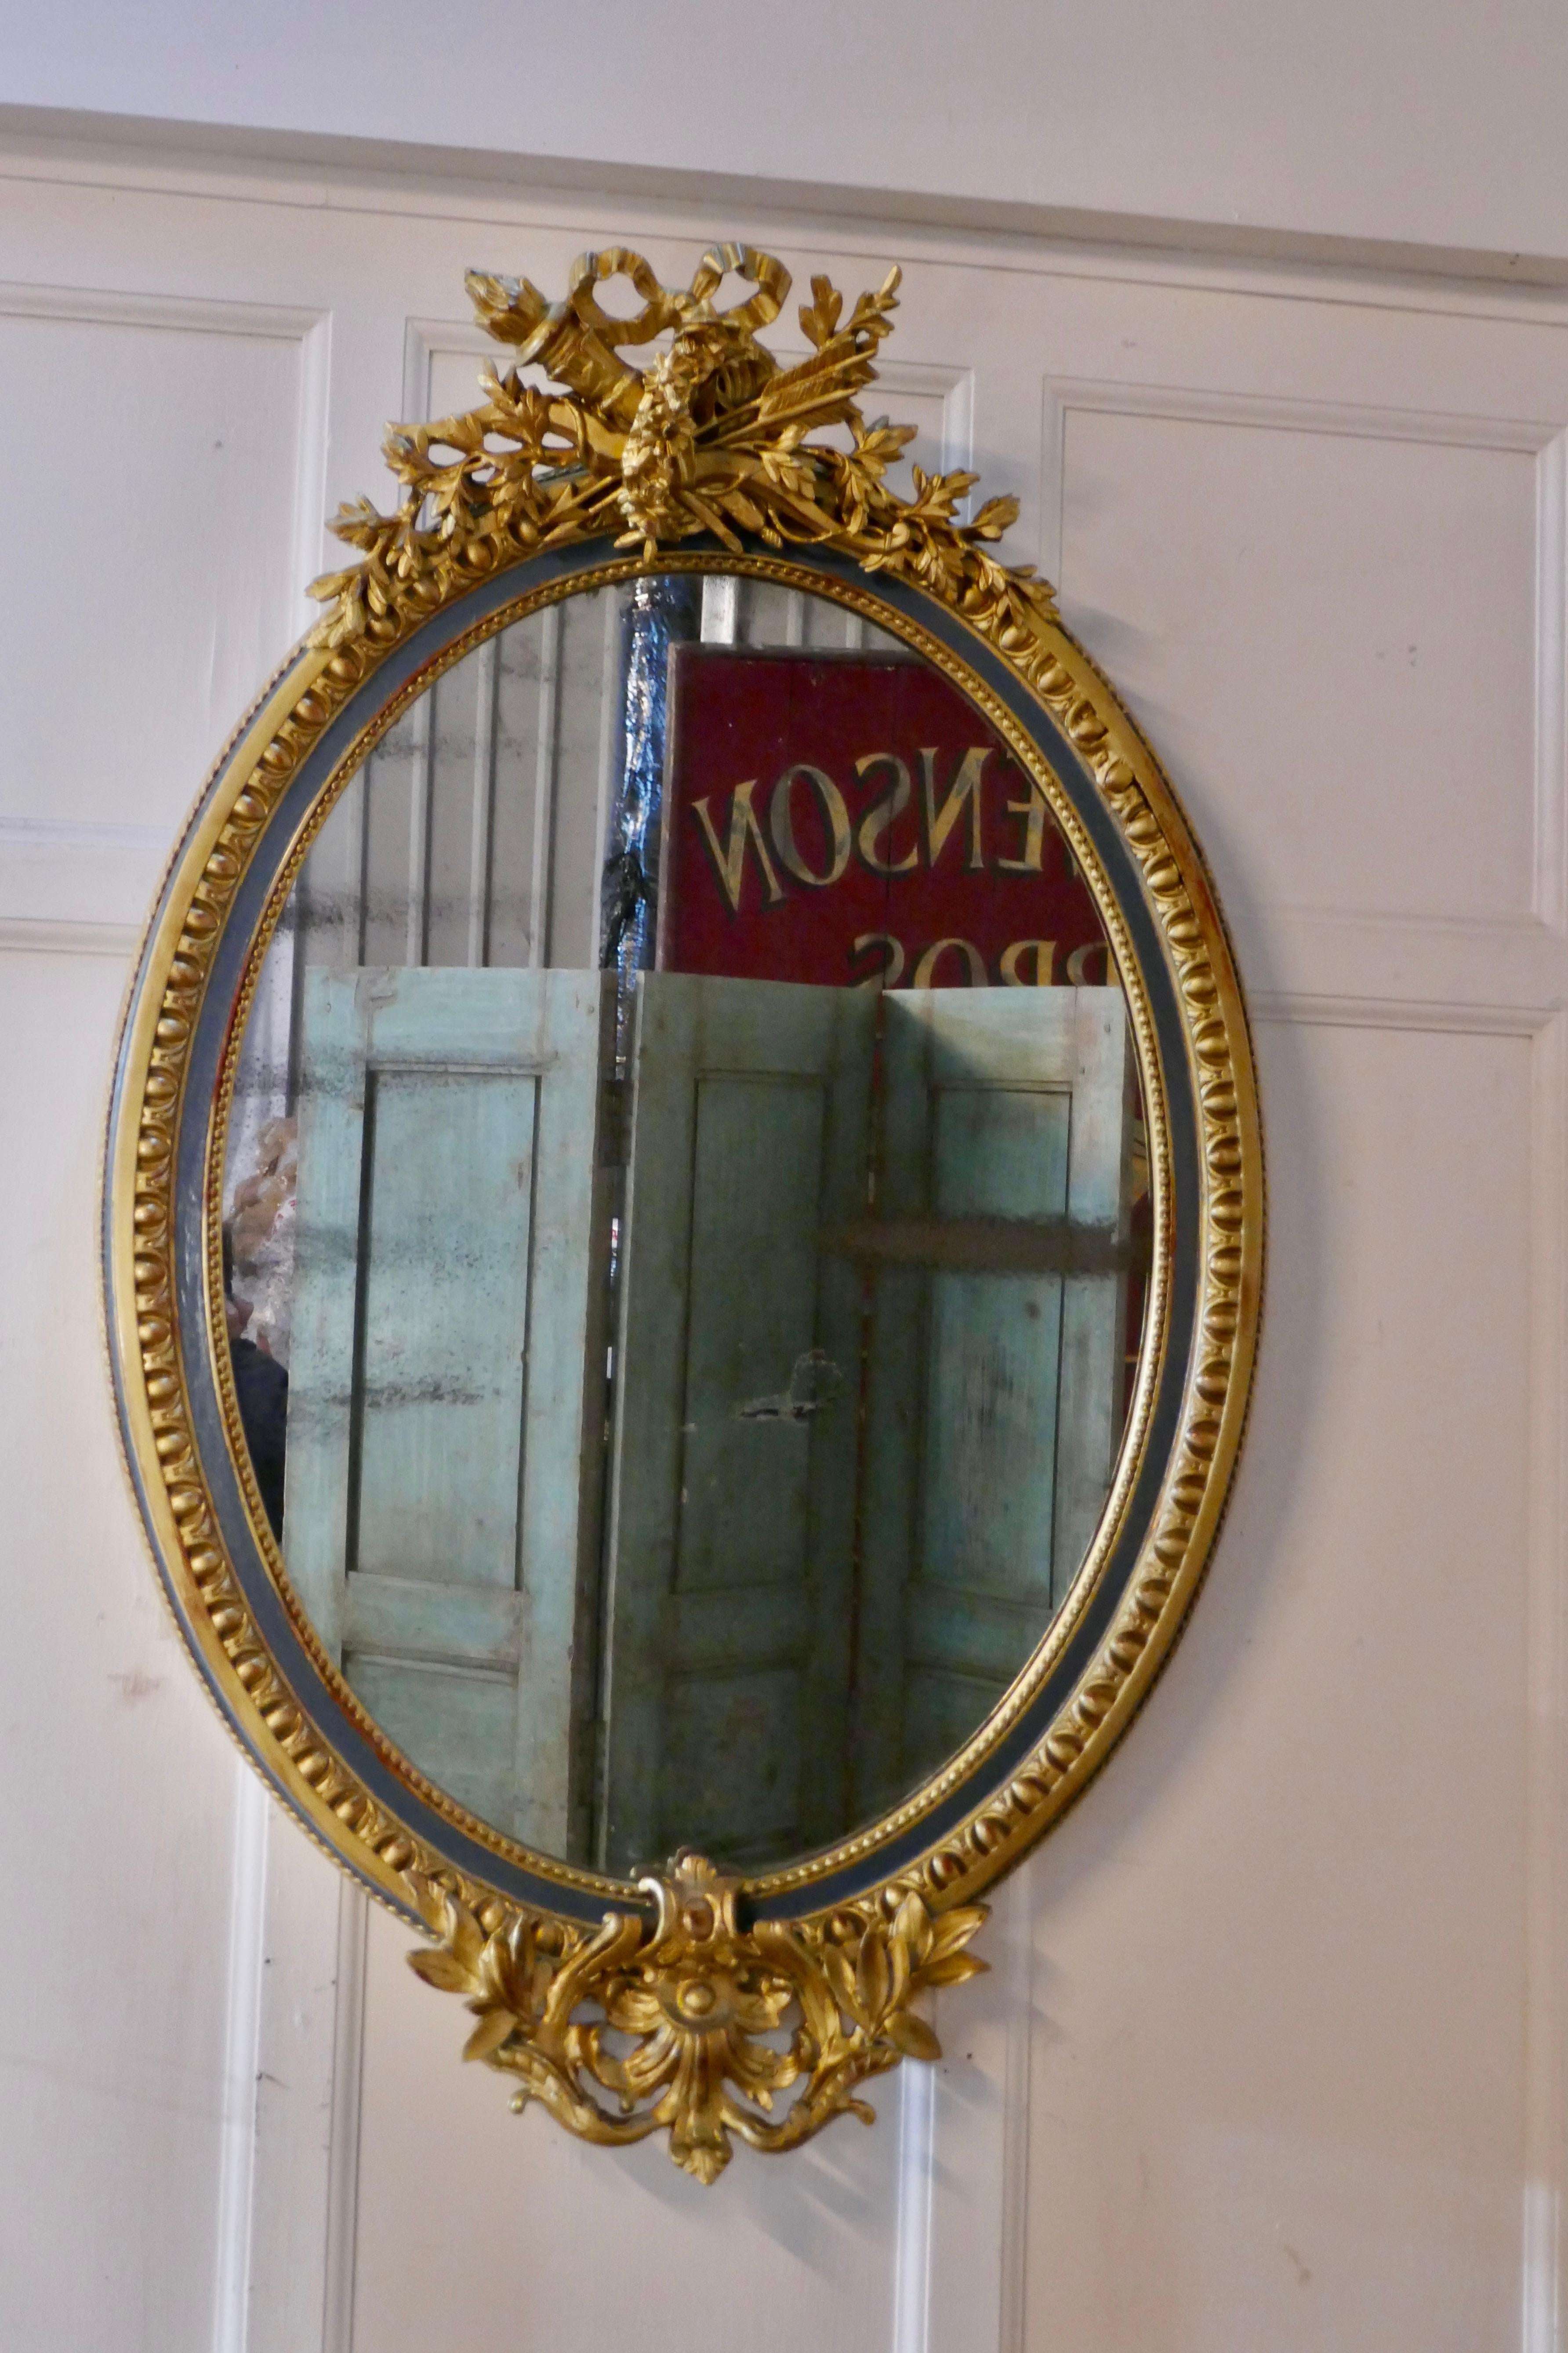 Un grand miroir mural Rococo français ovale et doré

Le miroir a un cadre doré exquis dans le style Rococo, il est décoré de flèches et de carquois, et de nombreuses fleurs et feuilles avec une bordure à motifs attrayante. Dans la bordure, il y a